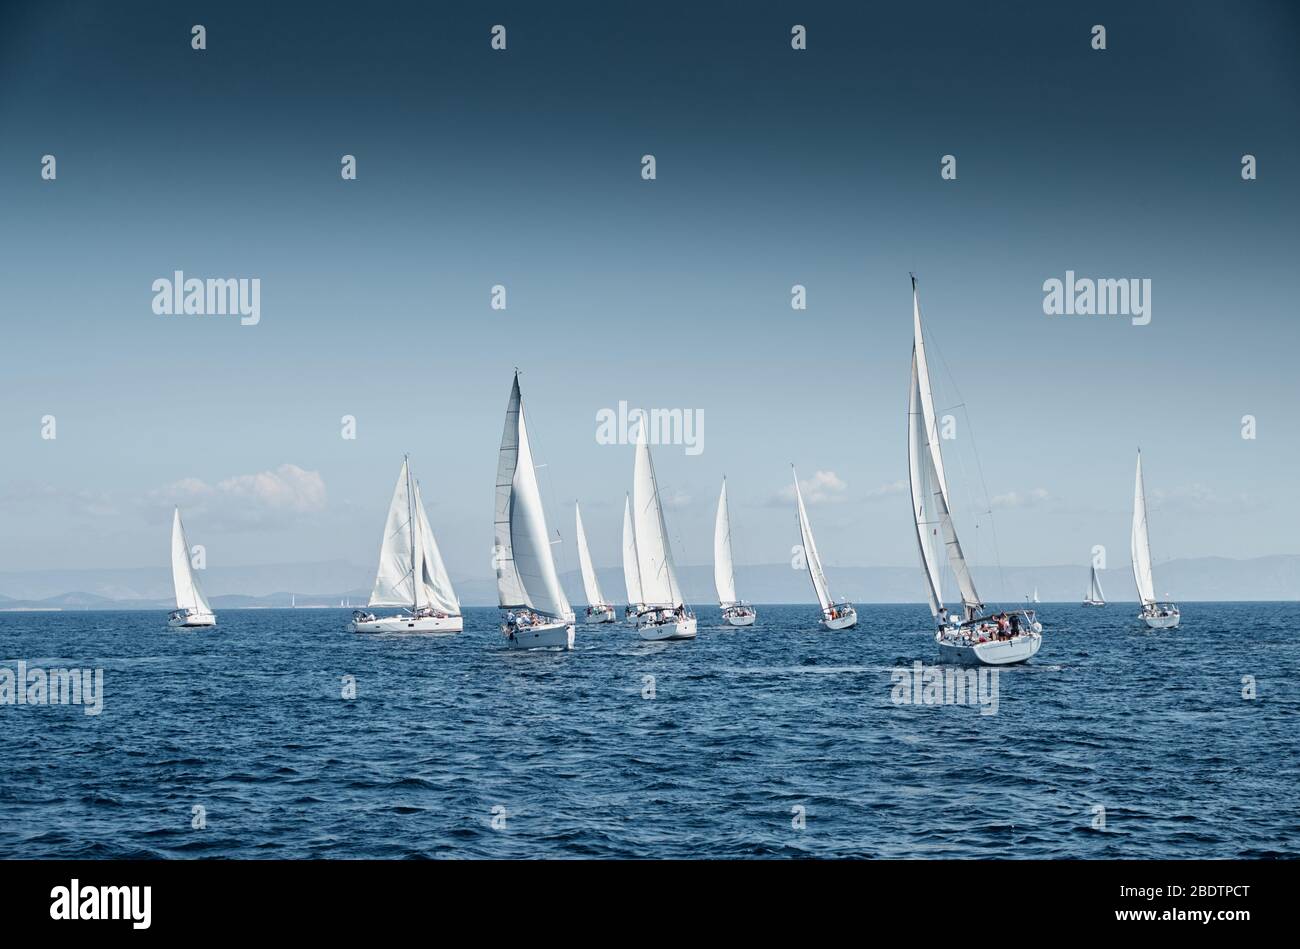 La carrera de veleros, una regata de vela, reflejo de velas en el agua, intensa competencia, el número de barcos es en popa, colores brillantes, la isla está en Foto de stock